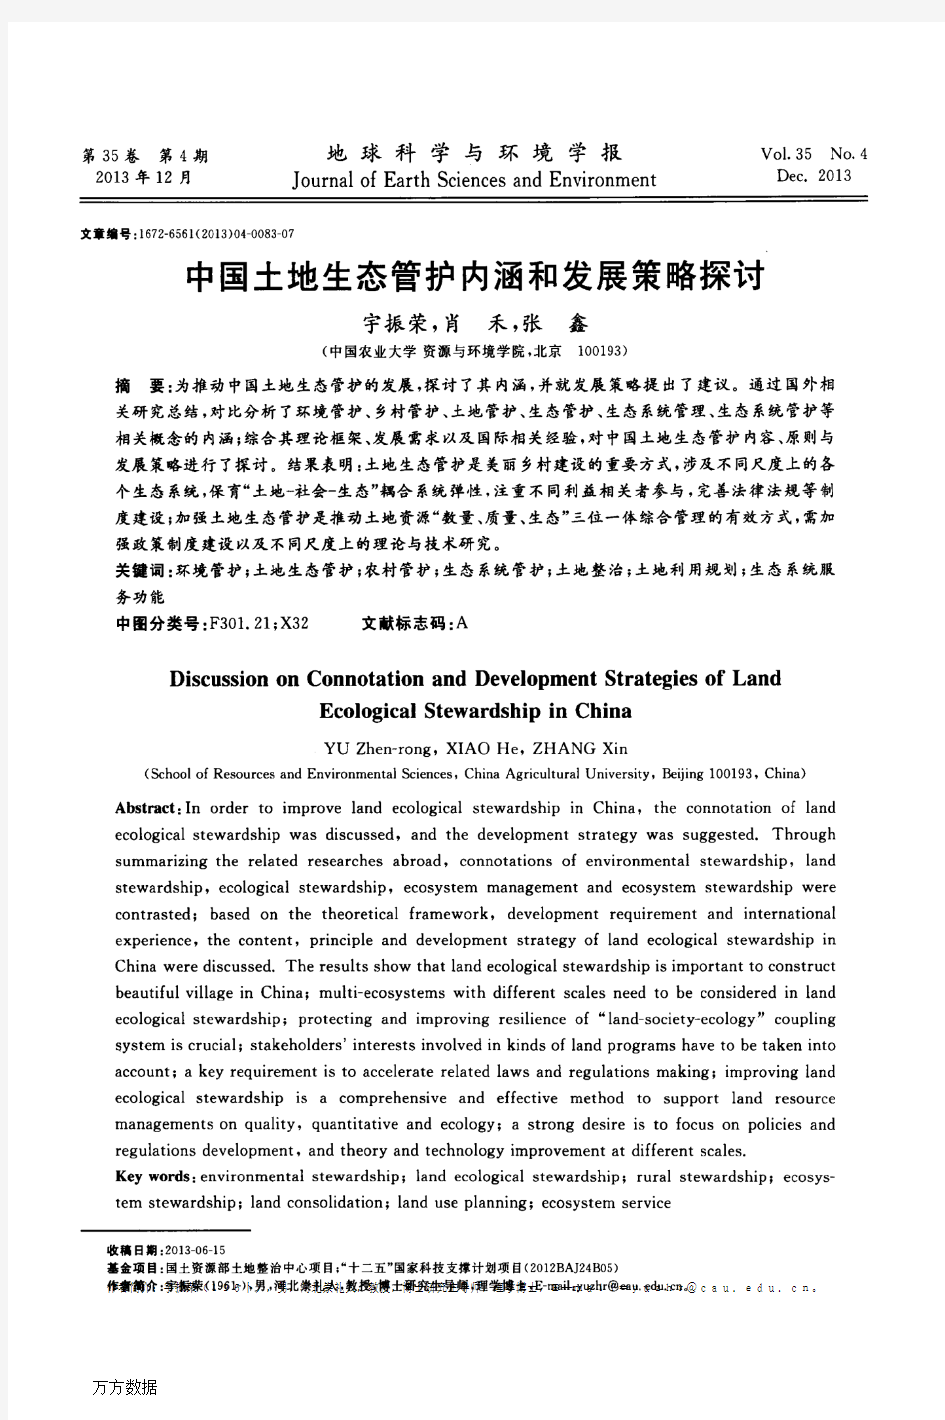 中国土地生态管护内涵和发展策略探讨